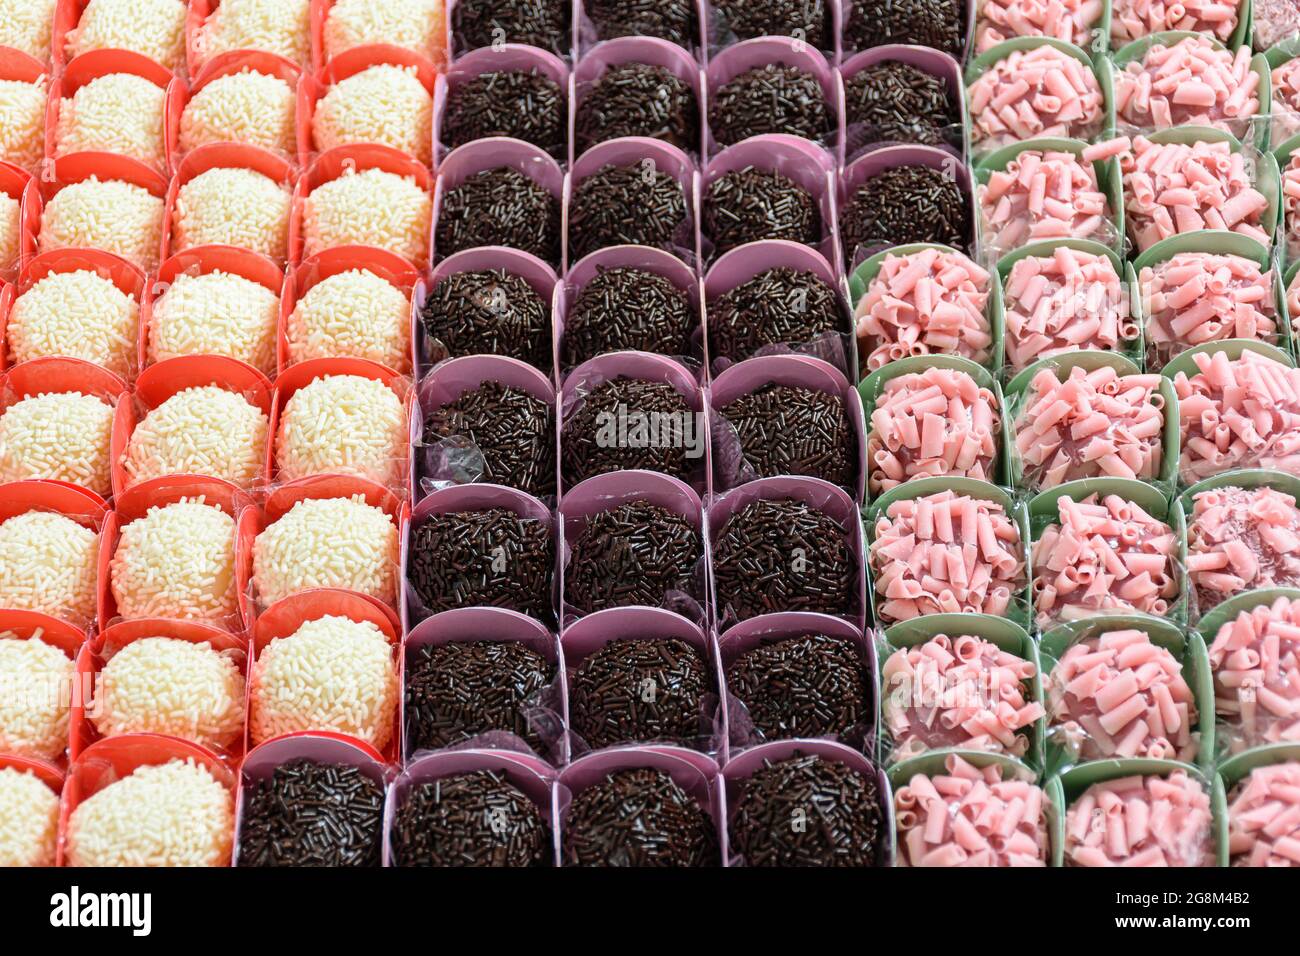 Vari tipi di brigadieri organizzati in file. Brigadieri al cioccolato, alla frutta rossa e al cioccolato bianco. Foto Stock